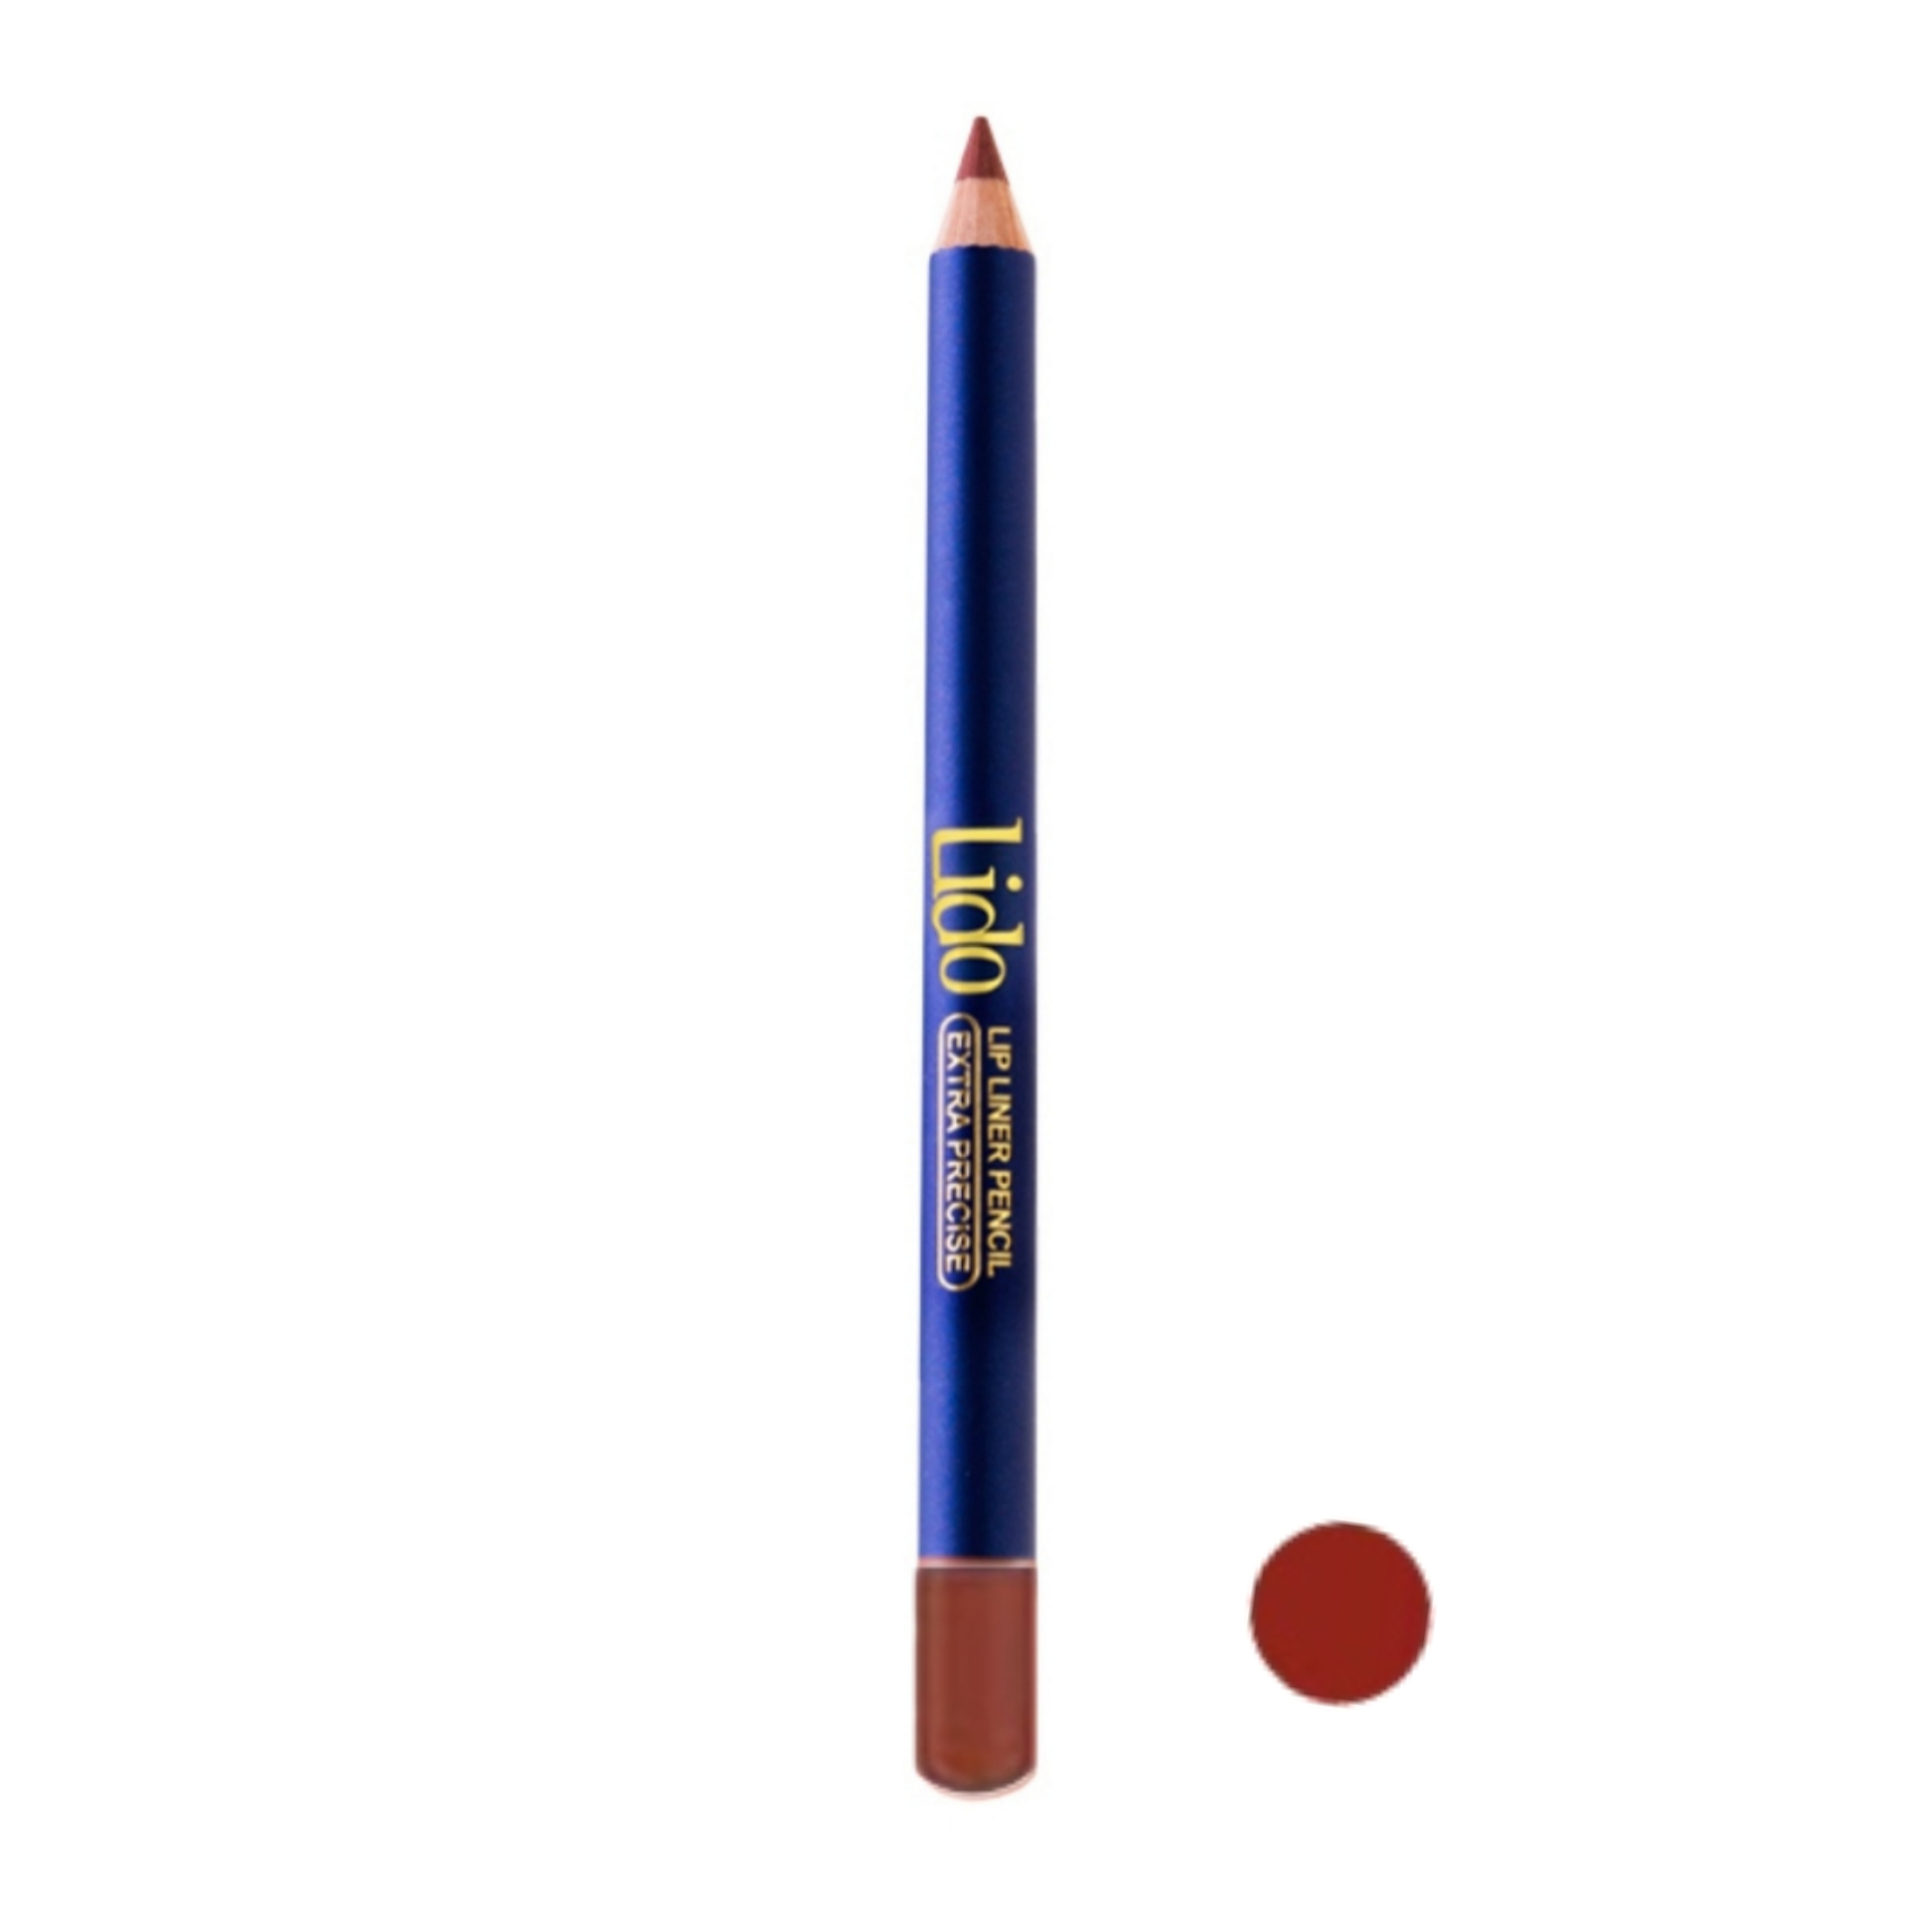 مداد لب لیدو مدل Extra precise شماره 506